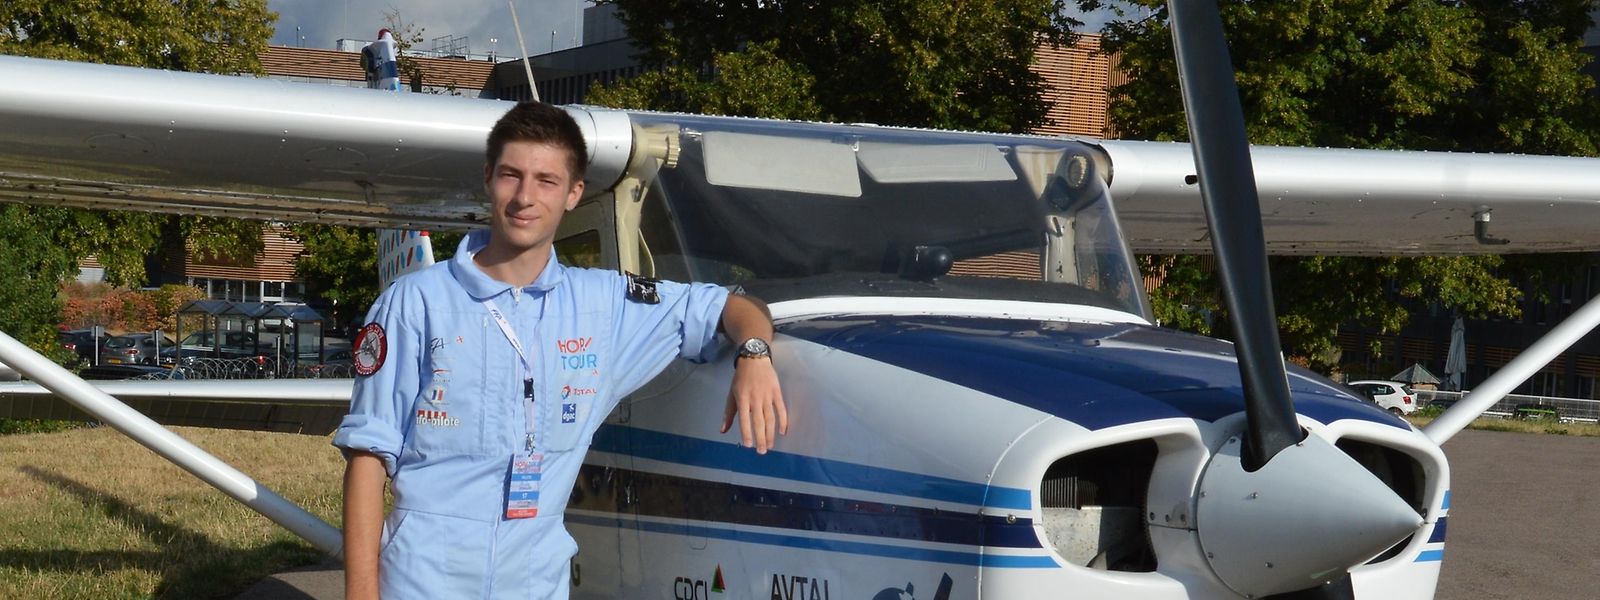 Louis Dengler startete vom Flughafen Findel aus mit der LX-AIW vom Typ Piper nach Frankreich. Der 19-jährige Abiturient wird ab Herbst eine  Pilotenschule in Deutschland besuchen.